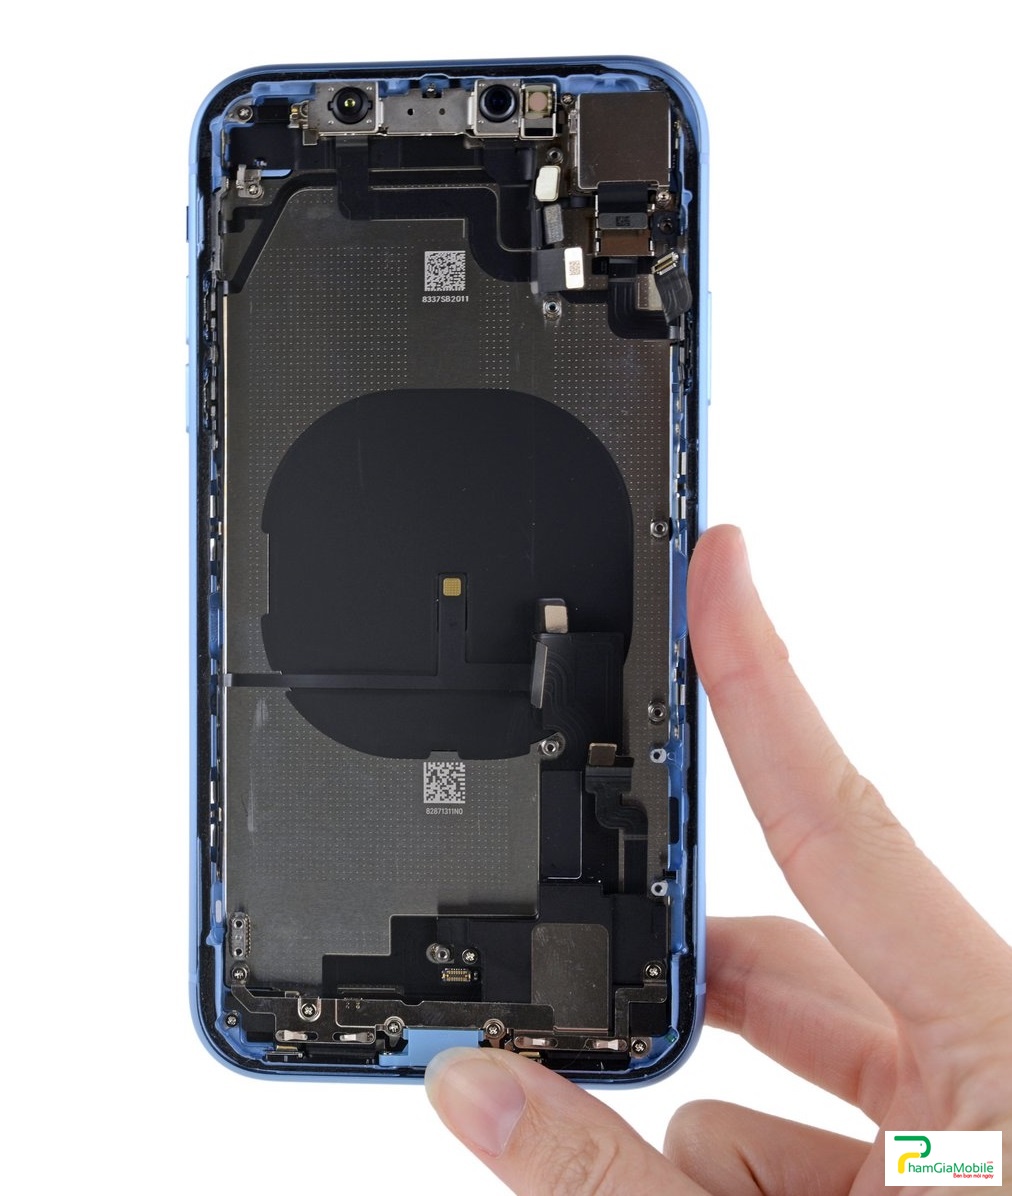 Địa Chỉ Chuyên Khắc Phục Lỗi iPhone XR 2019 Sạc Chập Chờn, Không Vào Pin Lấy Ngay Tại Chổ Phục Vụ Tận Tình Nhanh Chóng, Phục Vụ Hơn 2000 Khách Mỗi Tháng